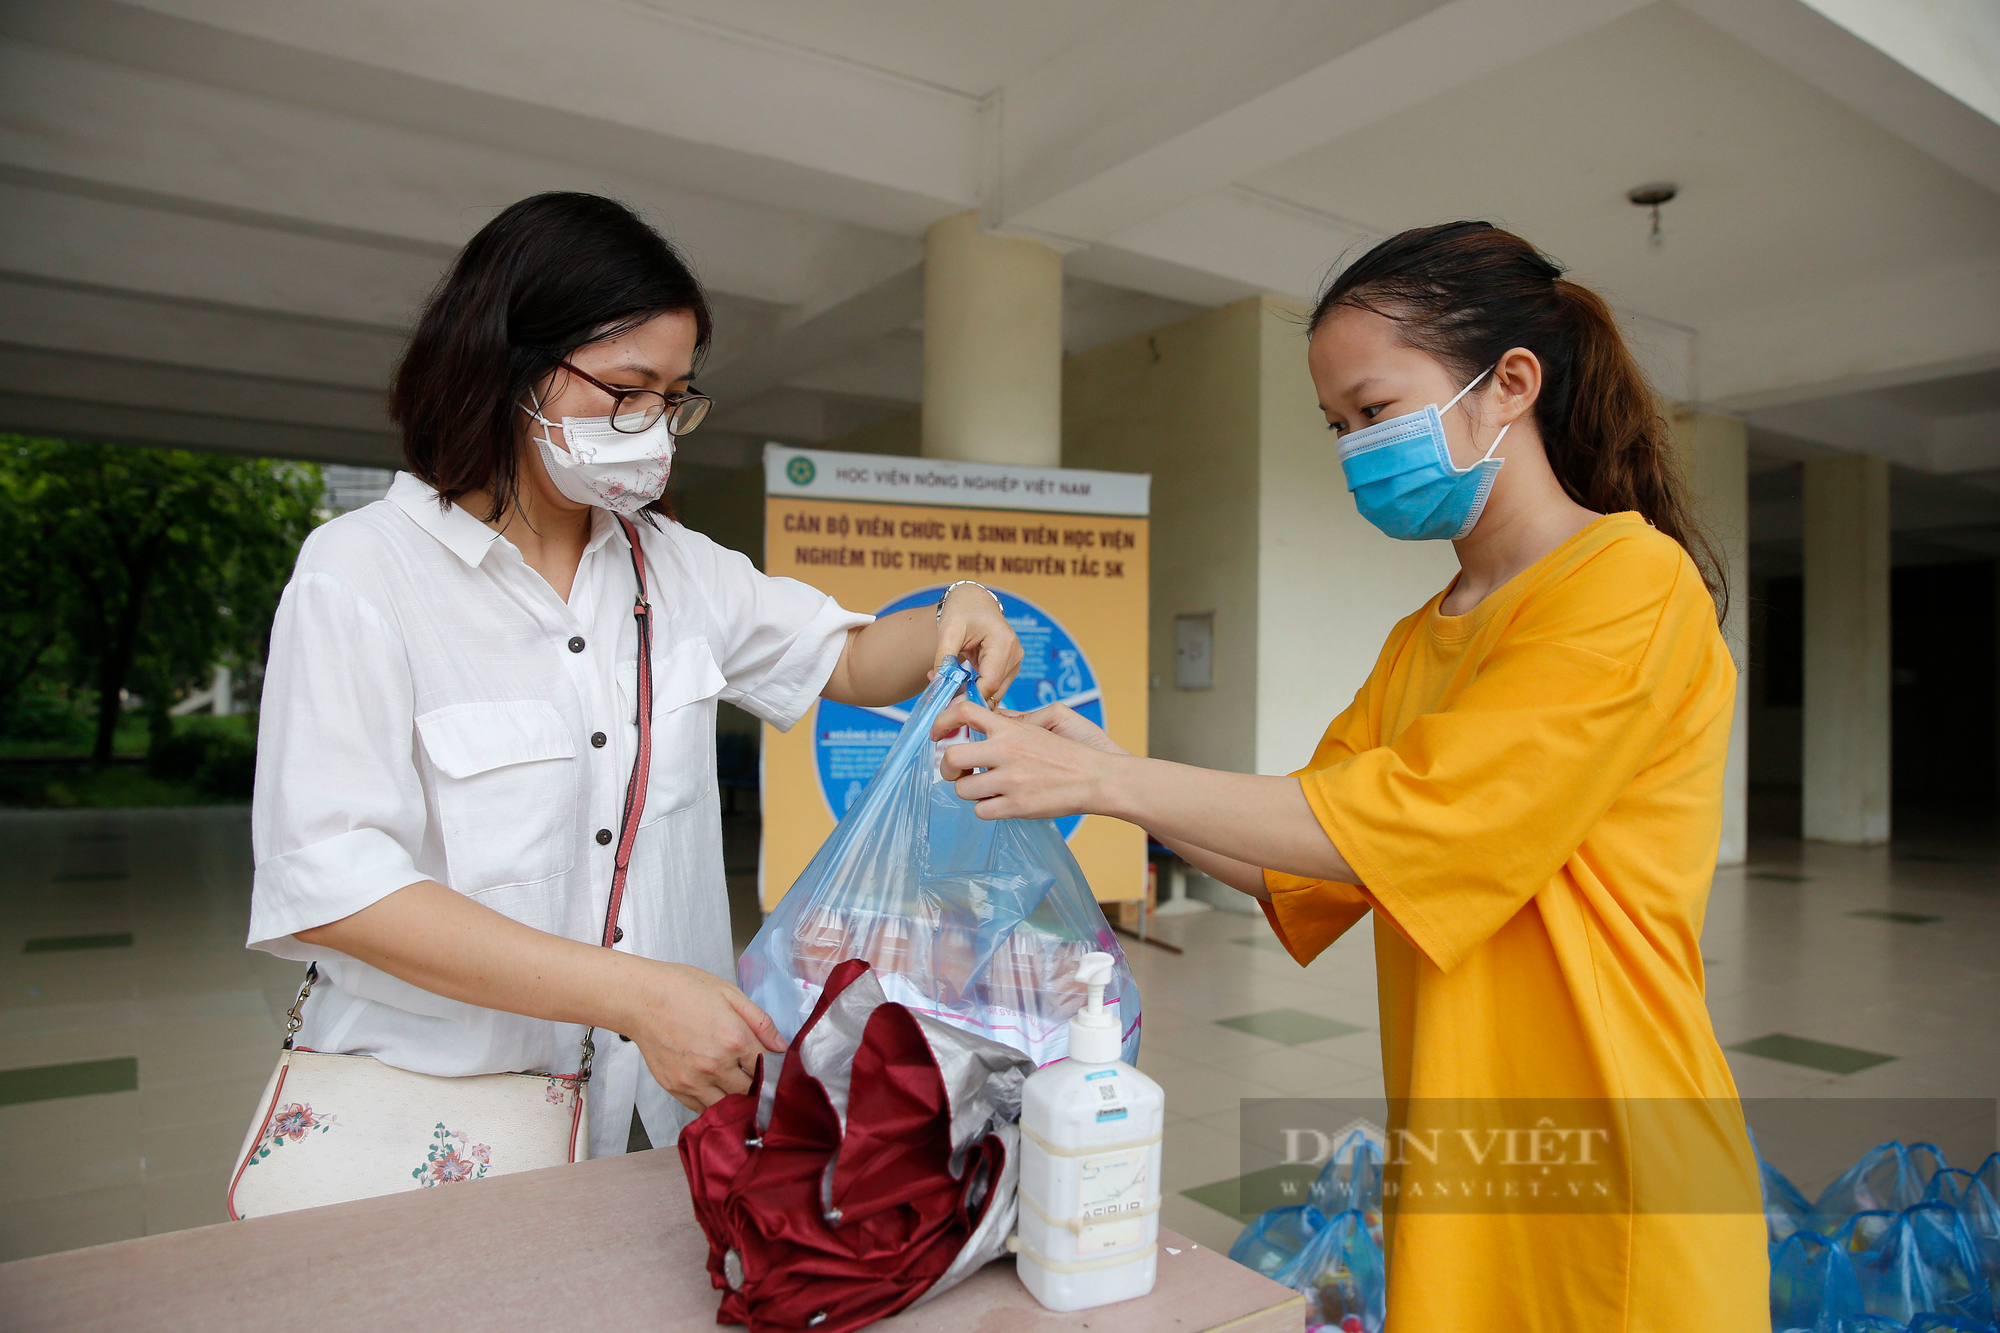 Báo NTNN/Dân Việt trao tặng hàng nghìn suất quà tới sinh viên và người lao động mắc kẹt tại Hà Nội - Ảnh 6.